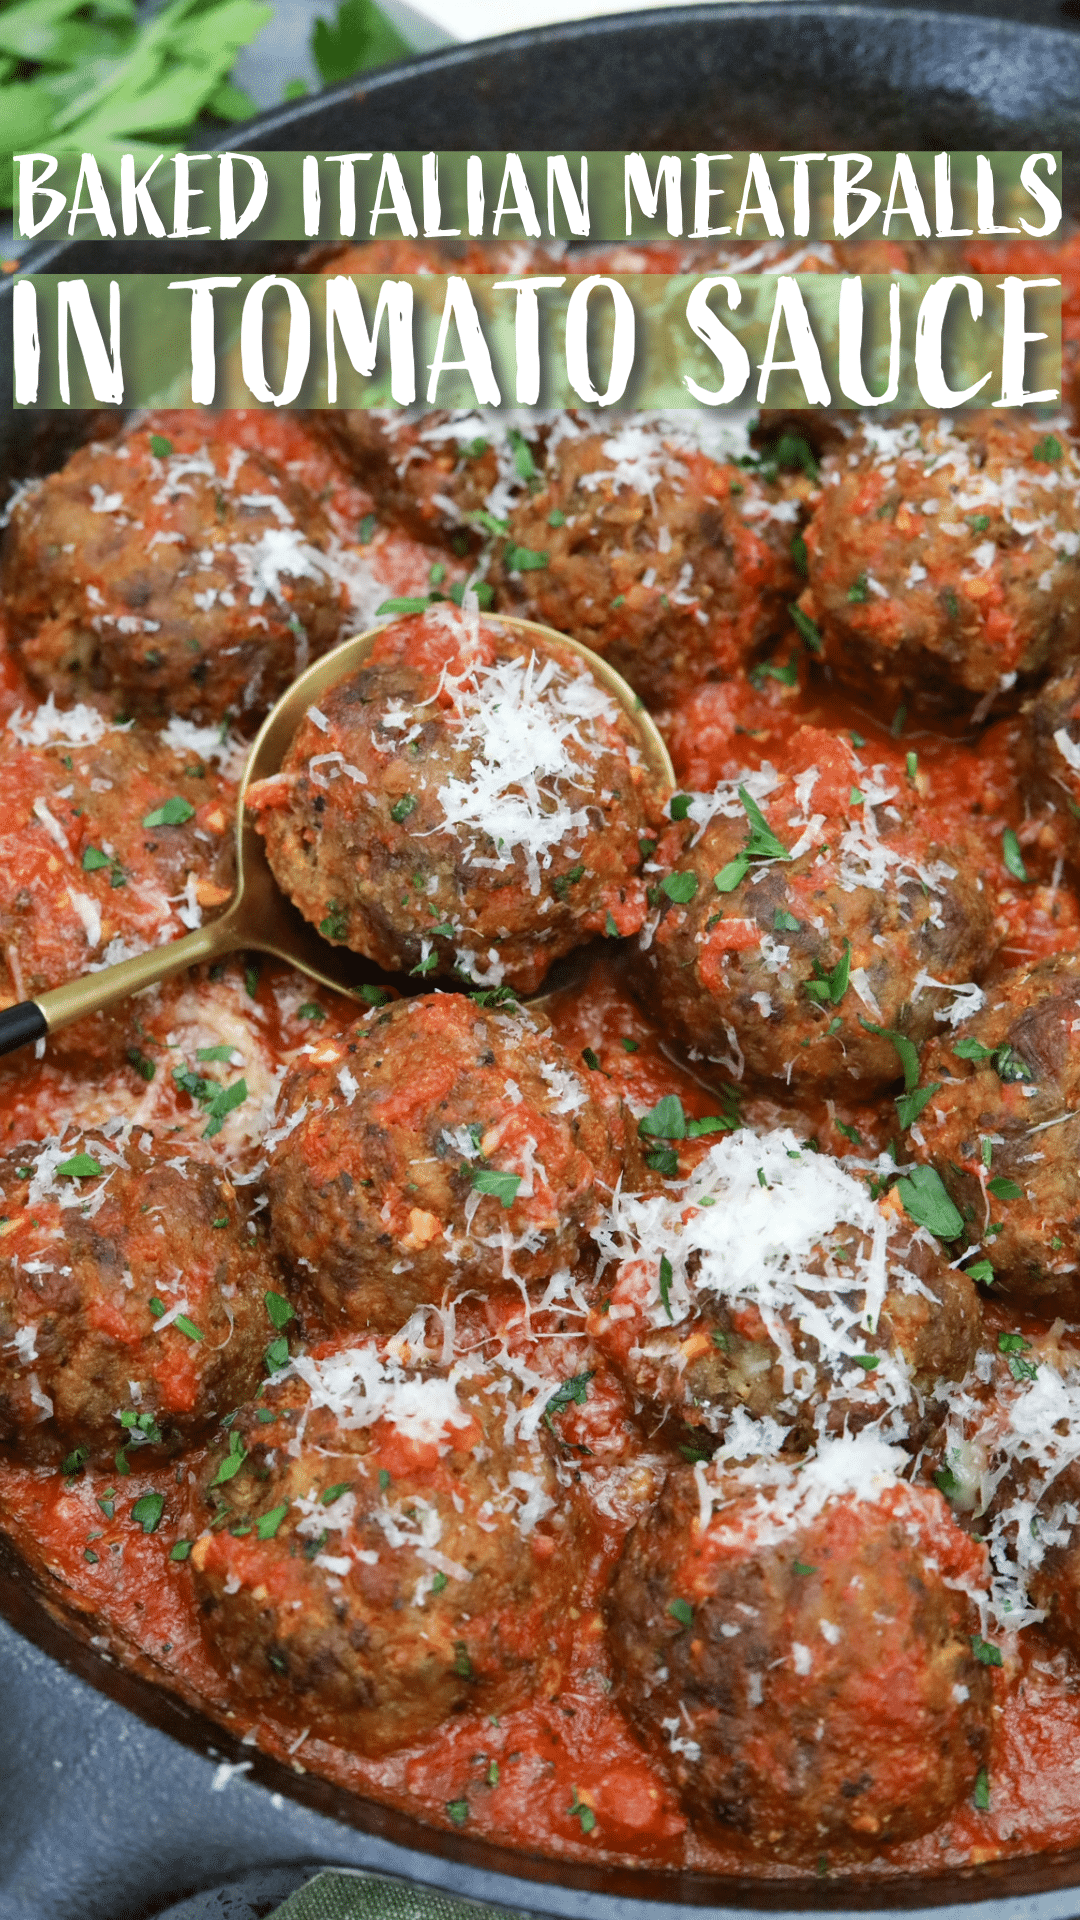 Italian meatballs in tomato sauce Pinterest pin